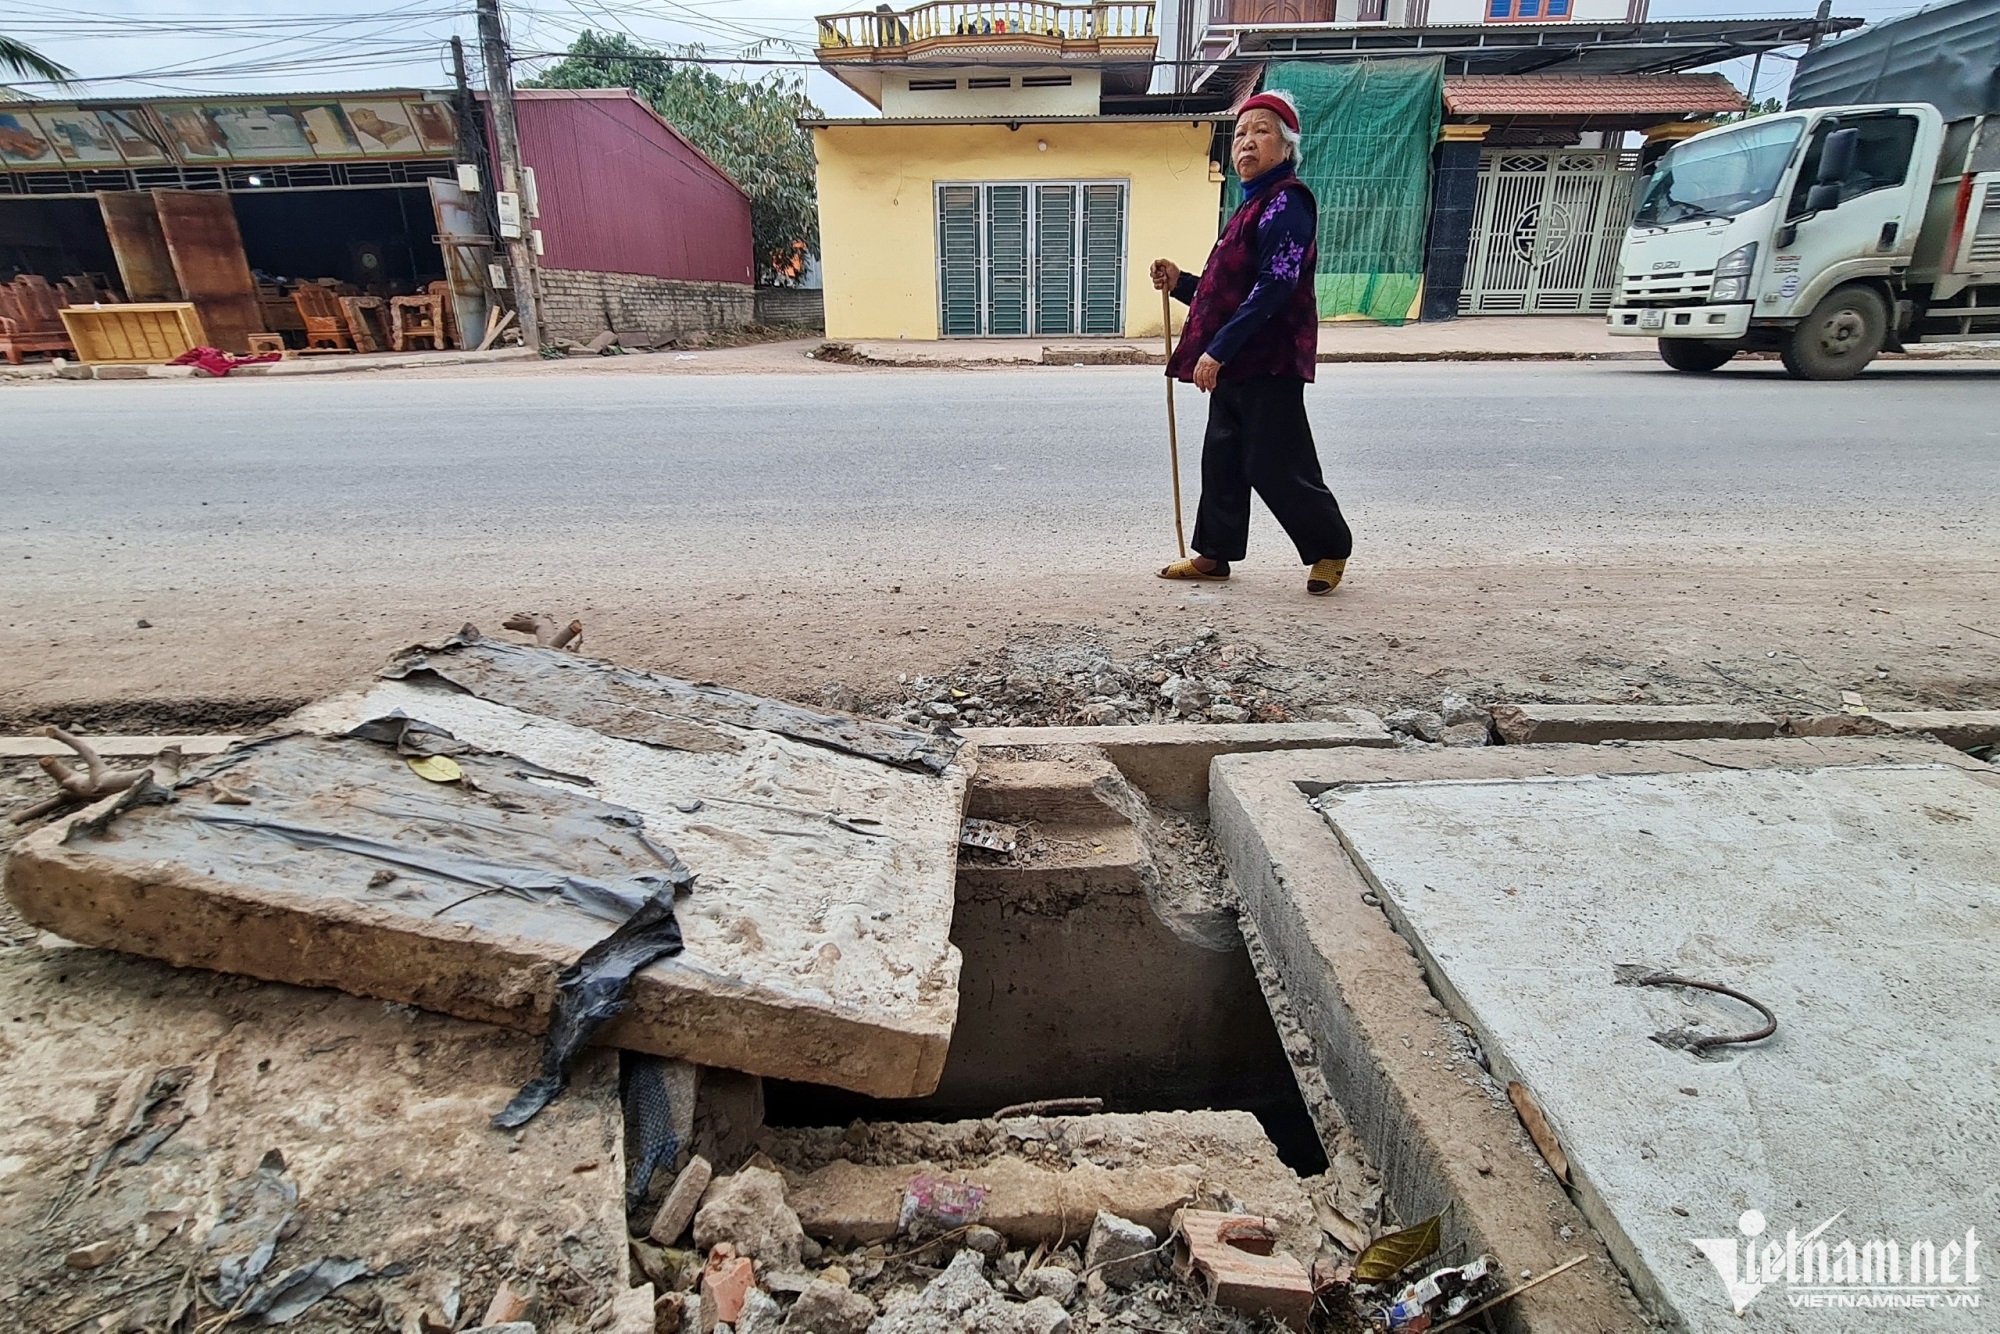 Hãi hùng loạt cống gần hiện trường bé 3 tuổi rơi xuống ở Bắc Giang: Không được che đậy kĩ càng, người dân nhiều lần lo sợ  - Ảnh 2